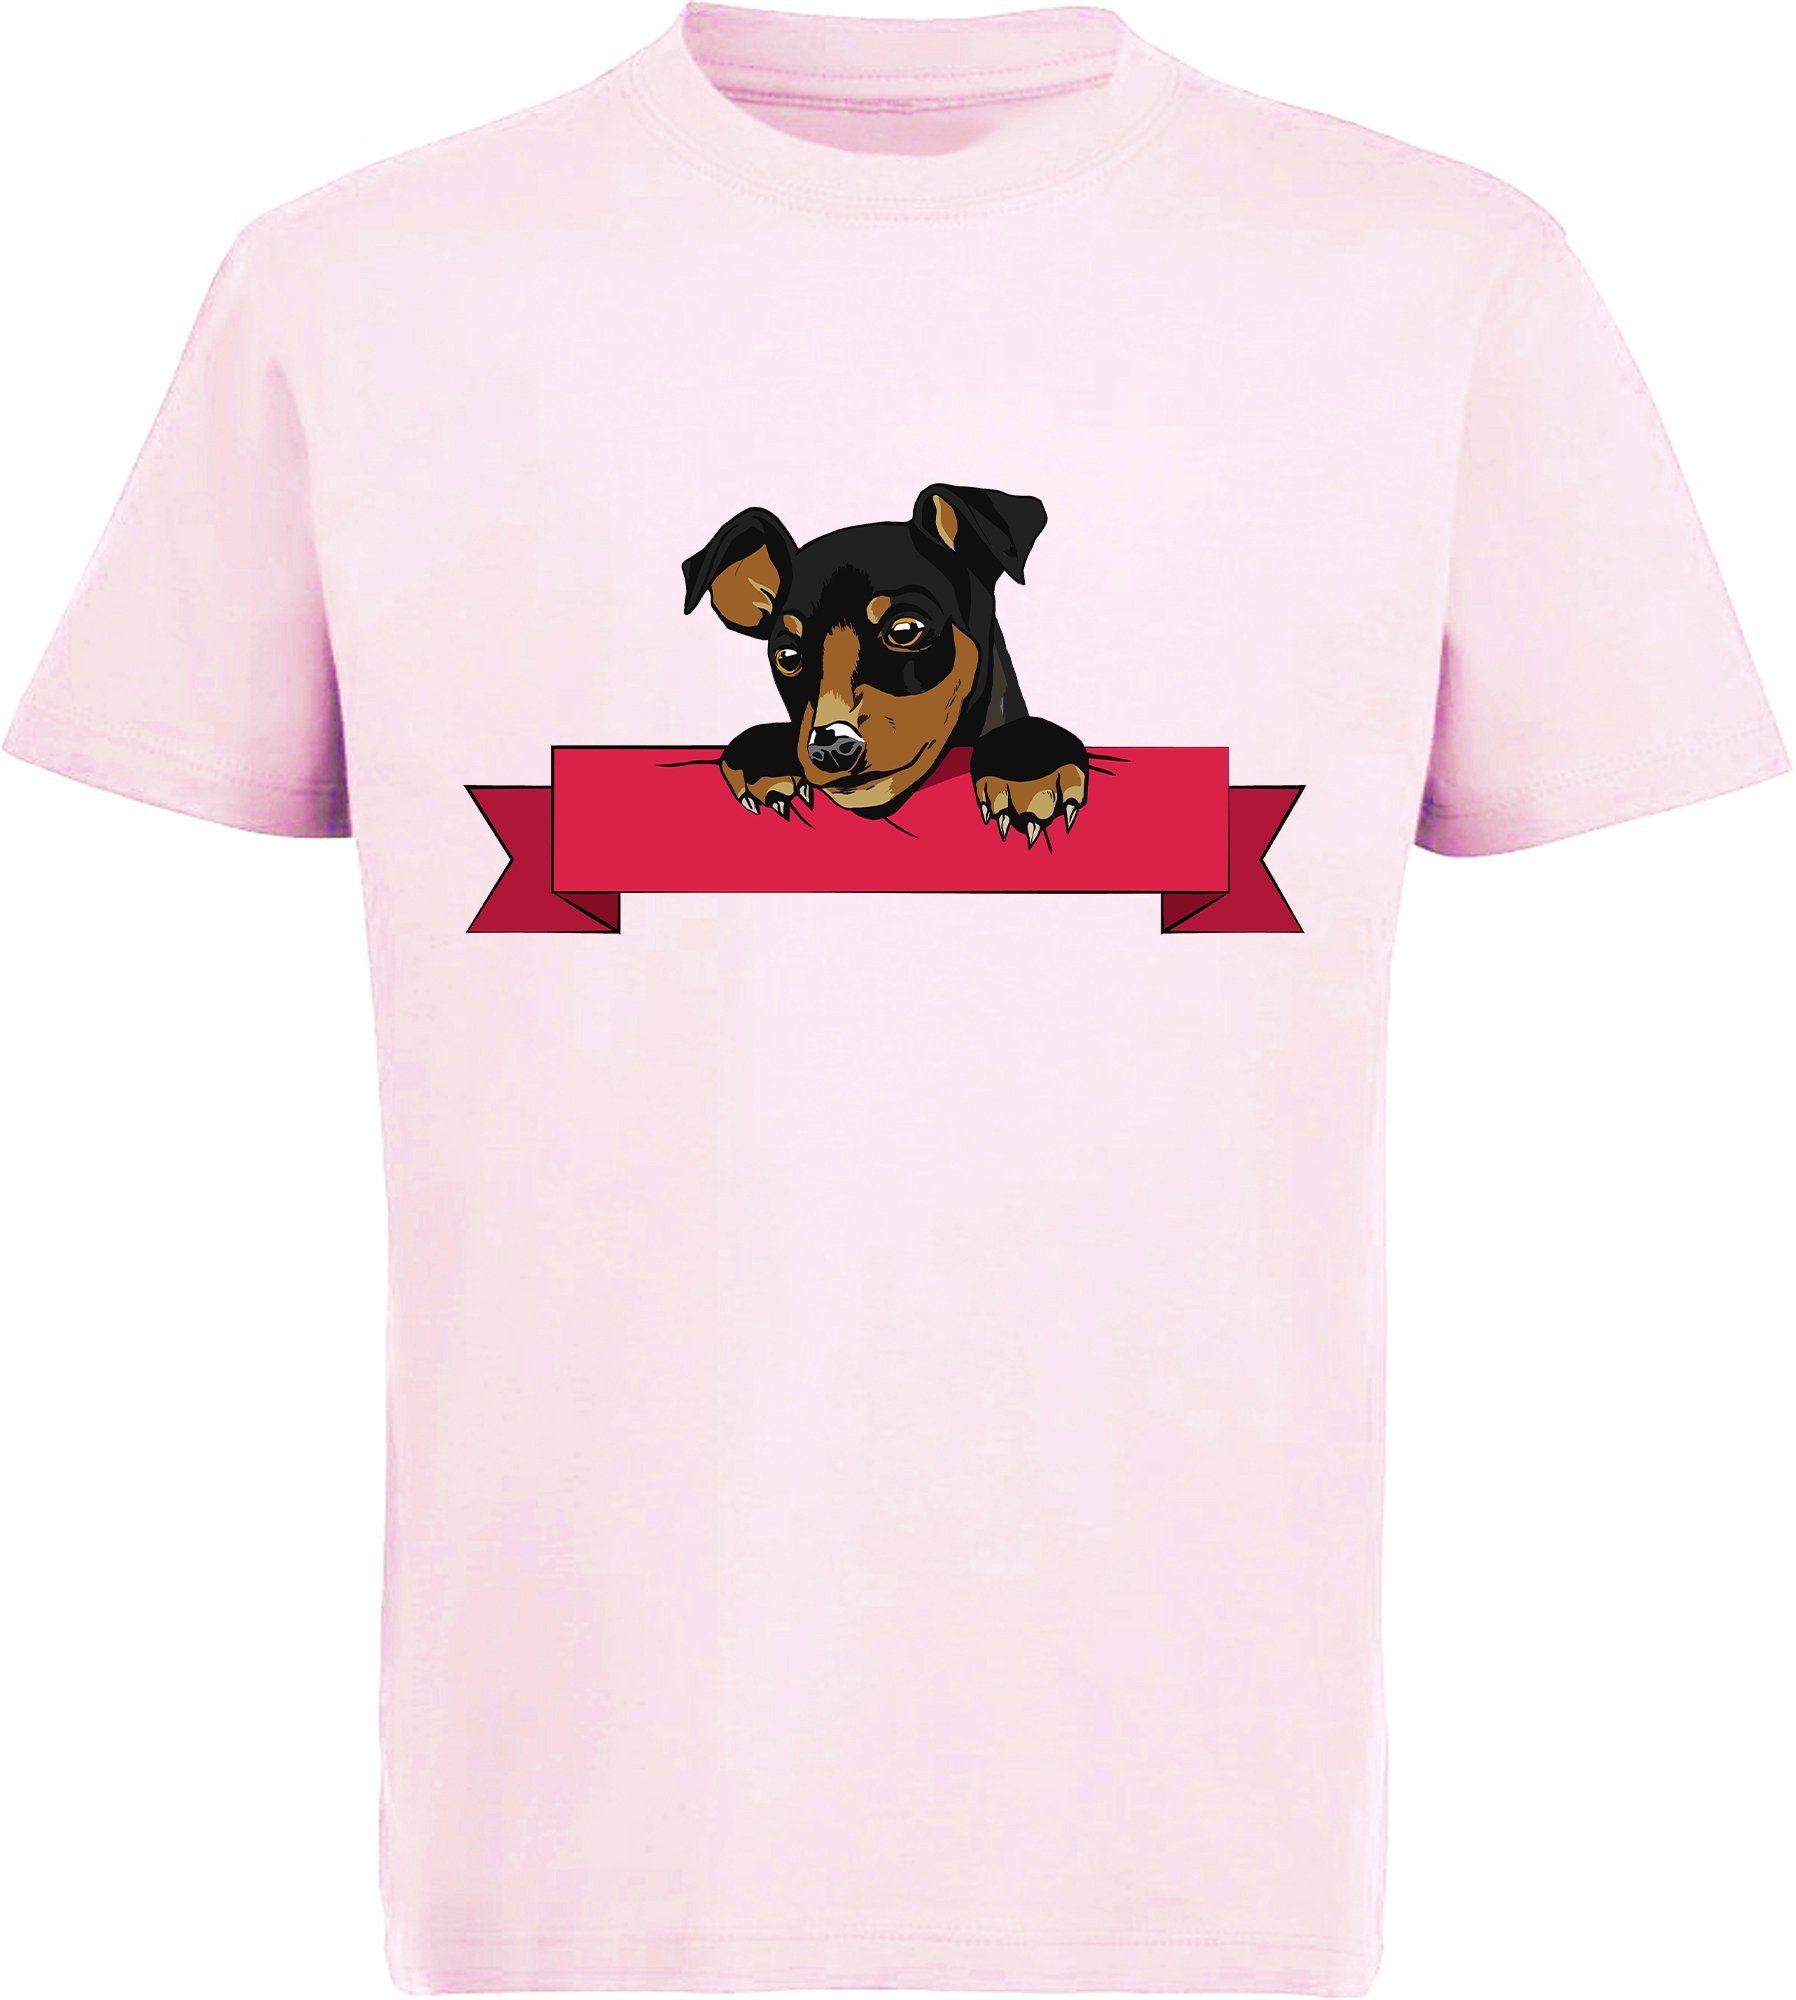 MyDesign24 Print-Shirt bedrucktes Kinder und Jugend Hunde T-Shirt - Hund  mit Banner Baumwollshirt mit Aufdruck, i213